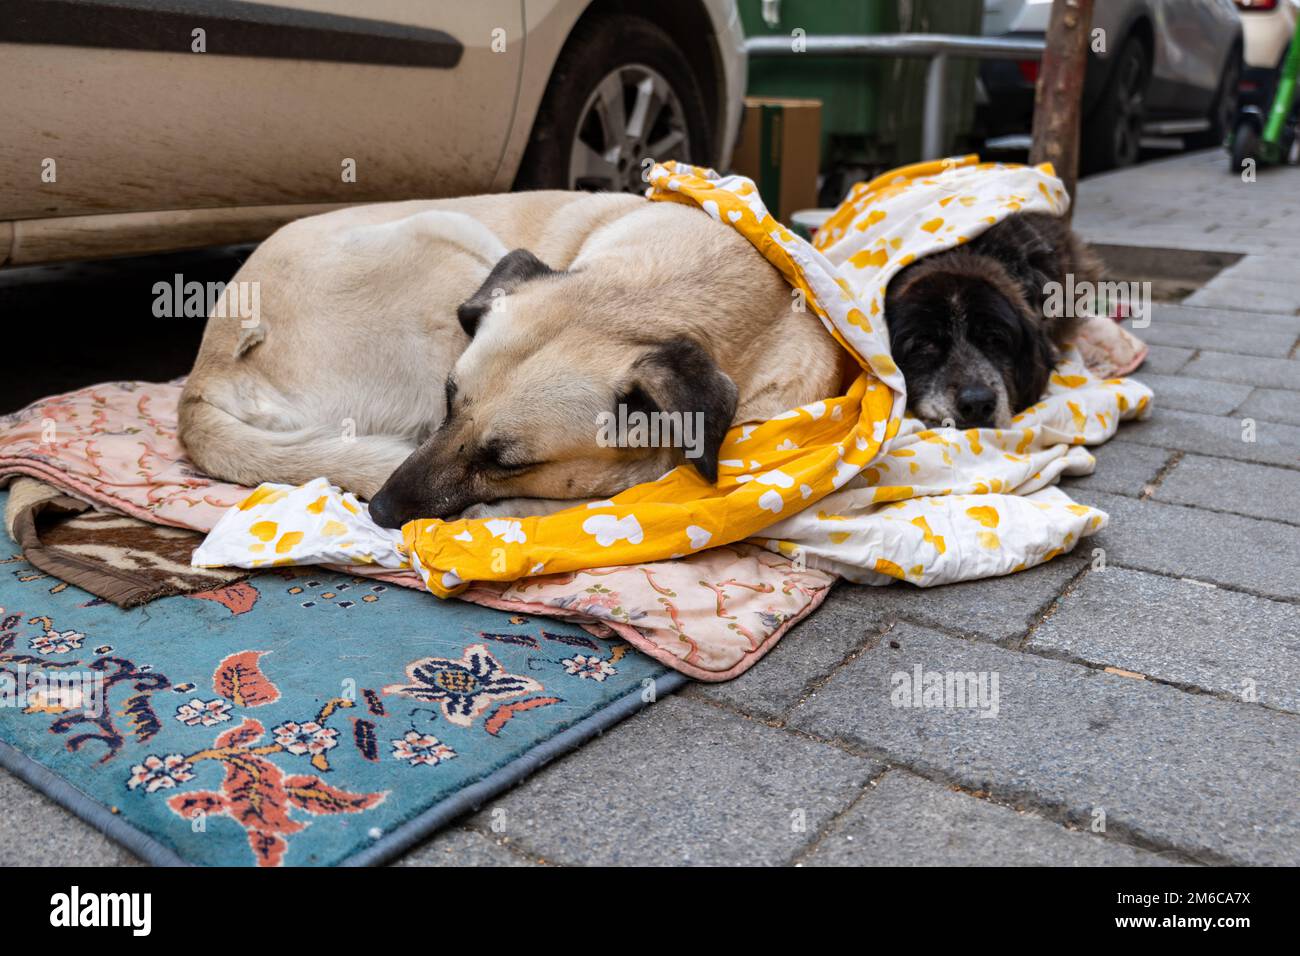 Streunende Hunde im Winter, schlafen auf der Straße - Tierrechte, Schutz, ethische Behandlung Konzeptfoto Stockfoto